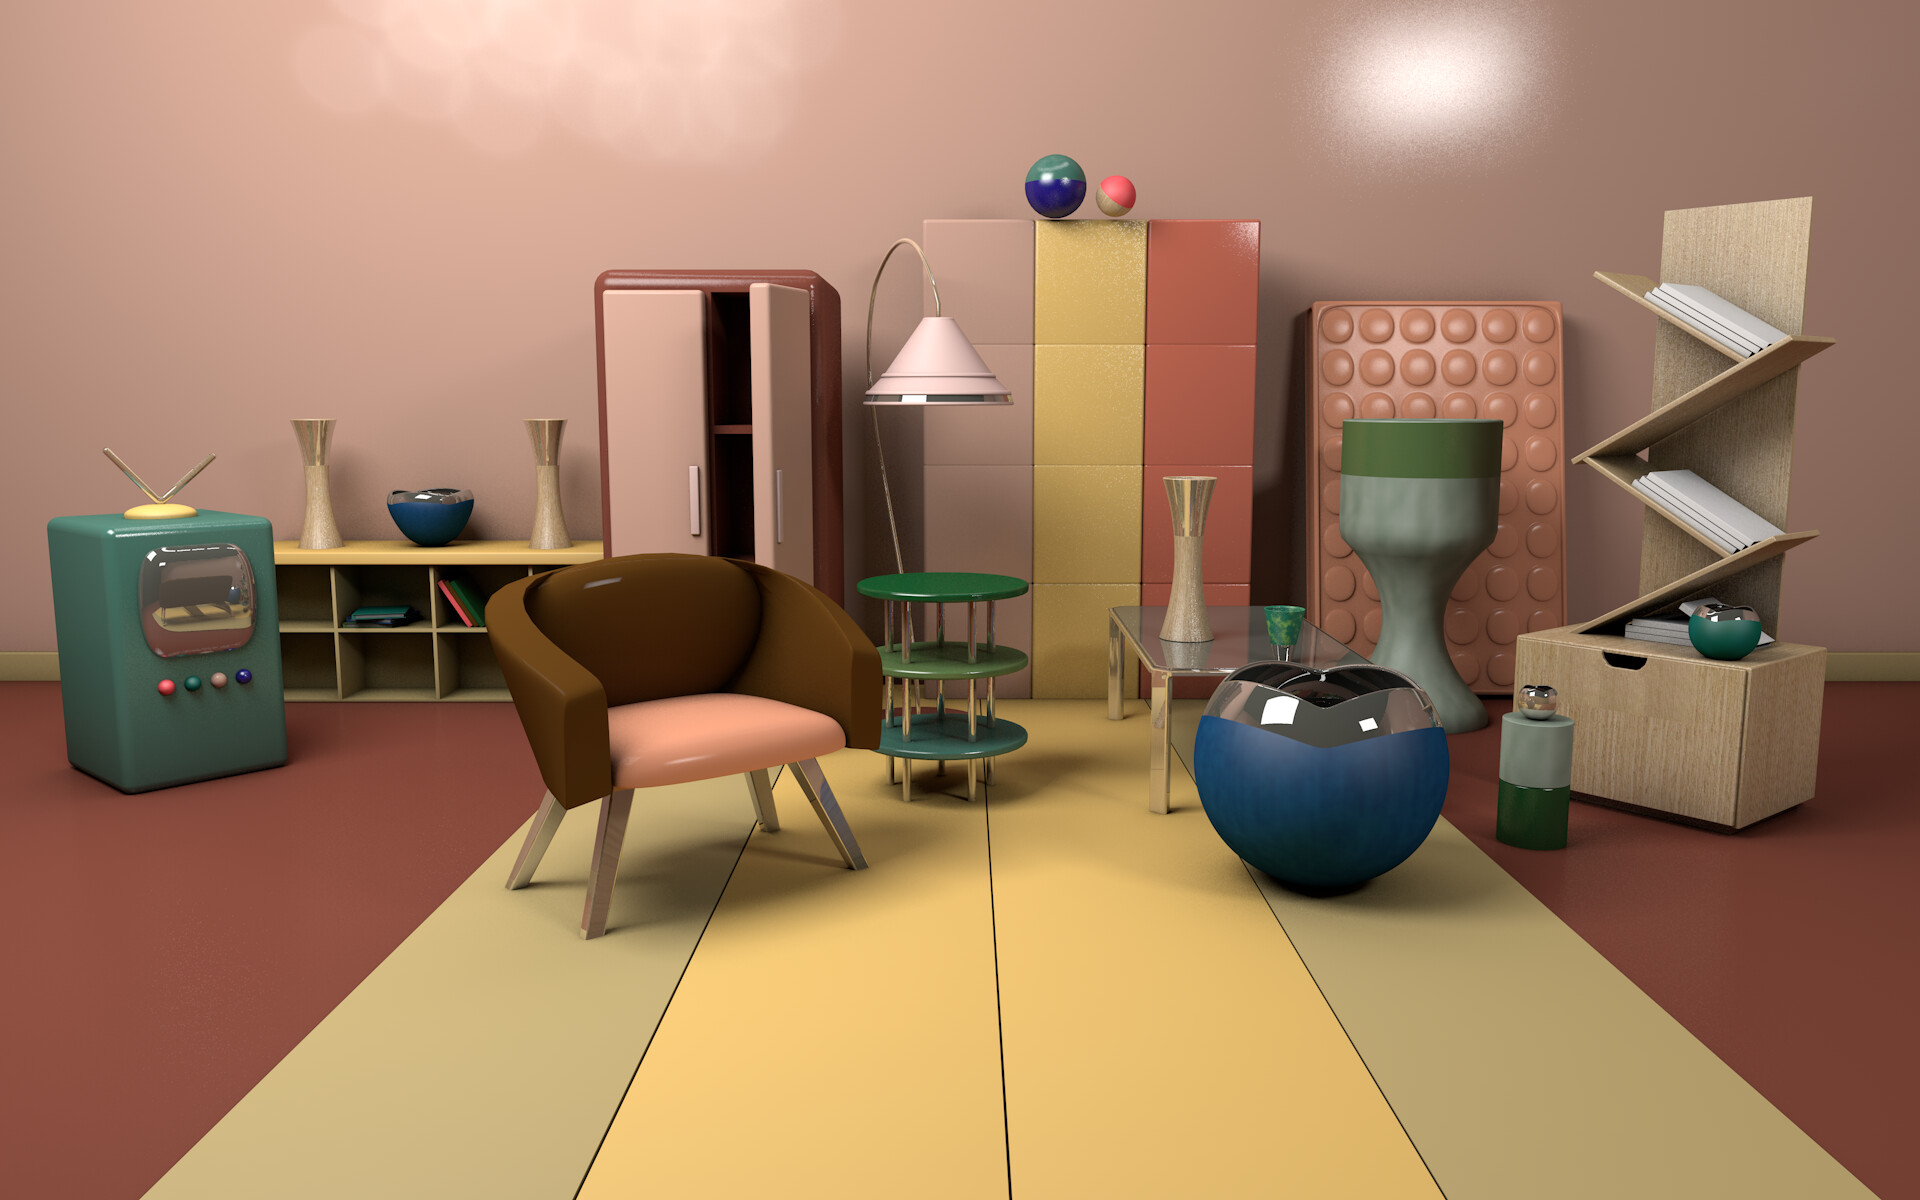 ArtStation - Cartoon Room Interior Elements 3D Model